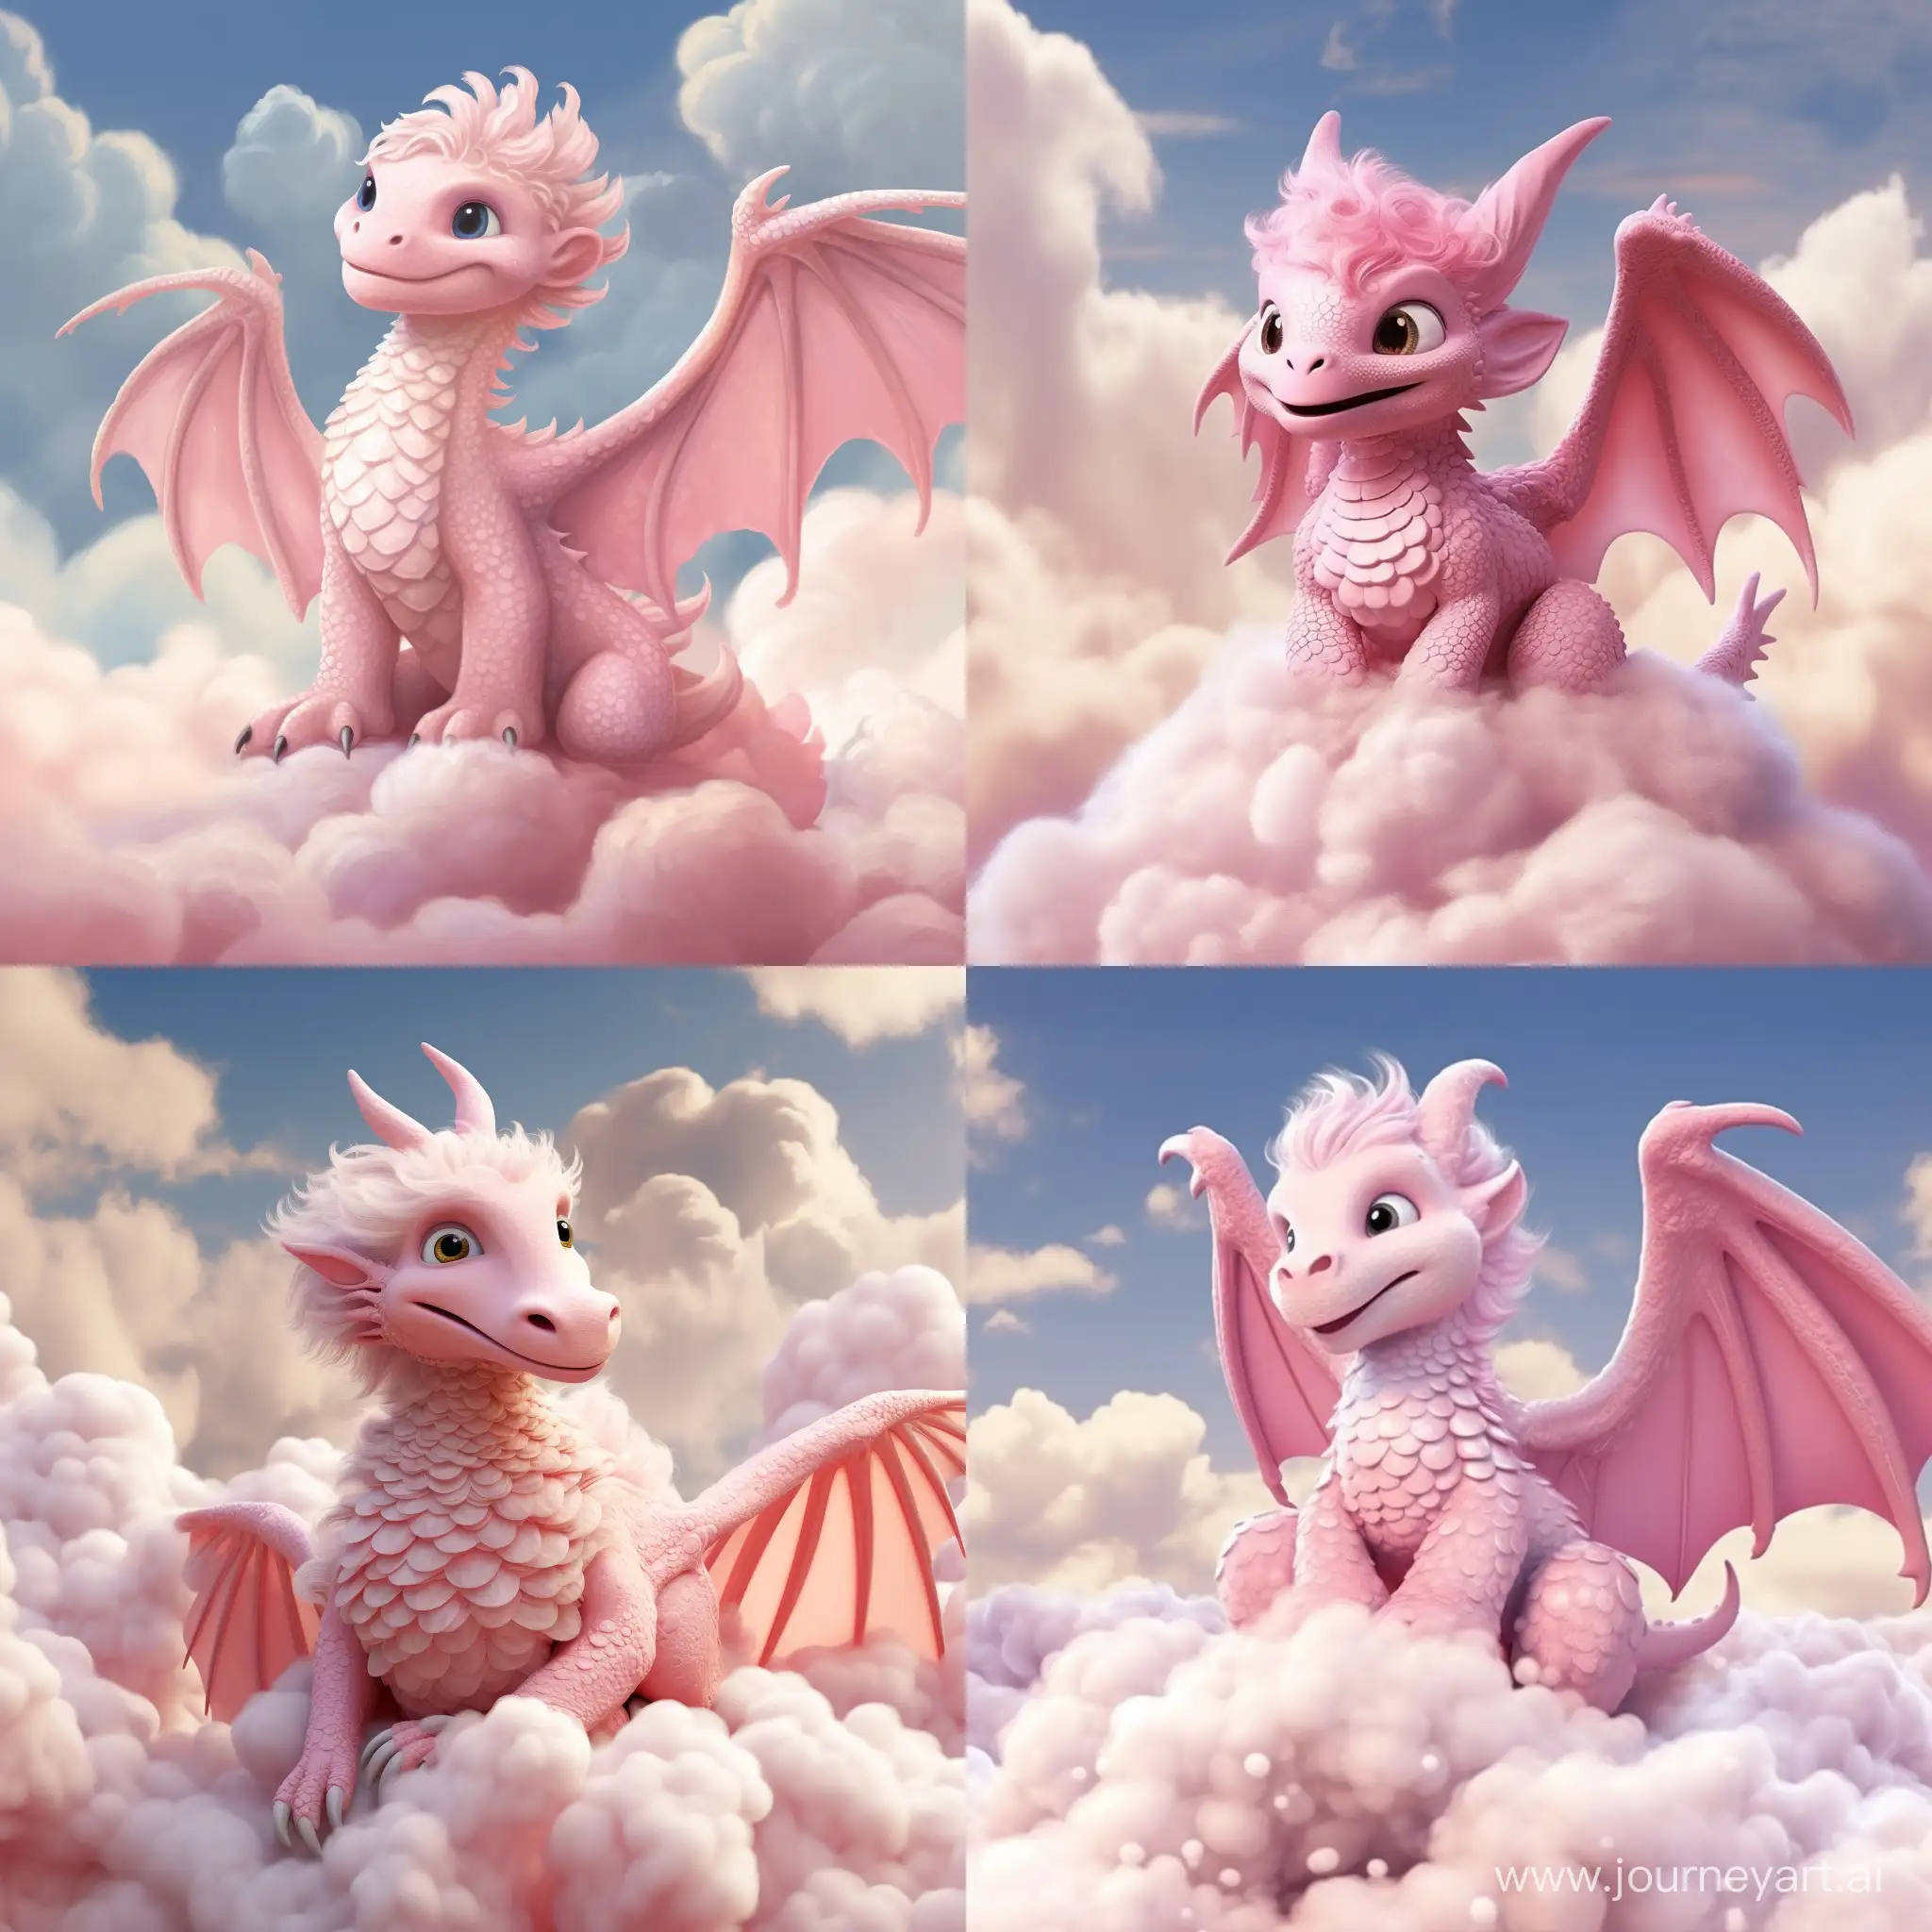 милый розовый дракон сидит на мягком пушистом облачке, сказочно, высокая детализация